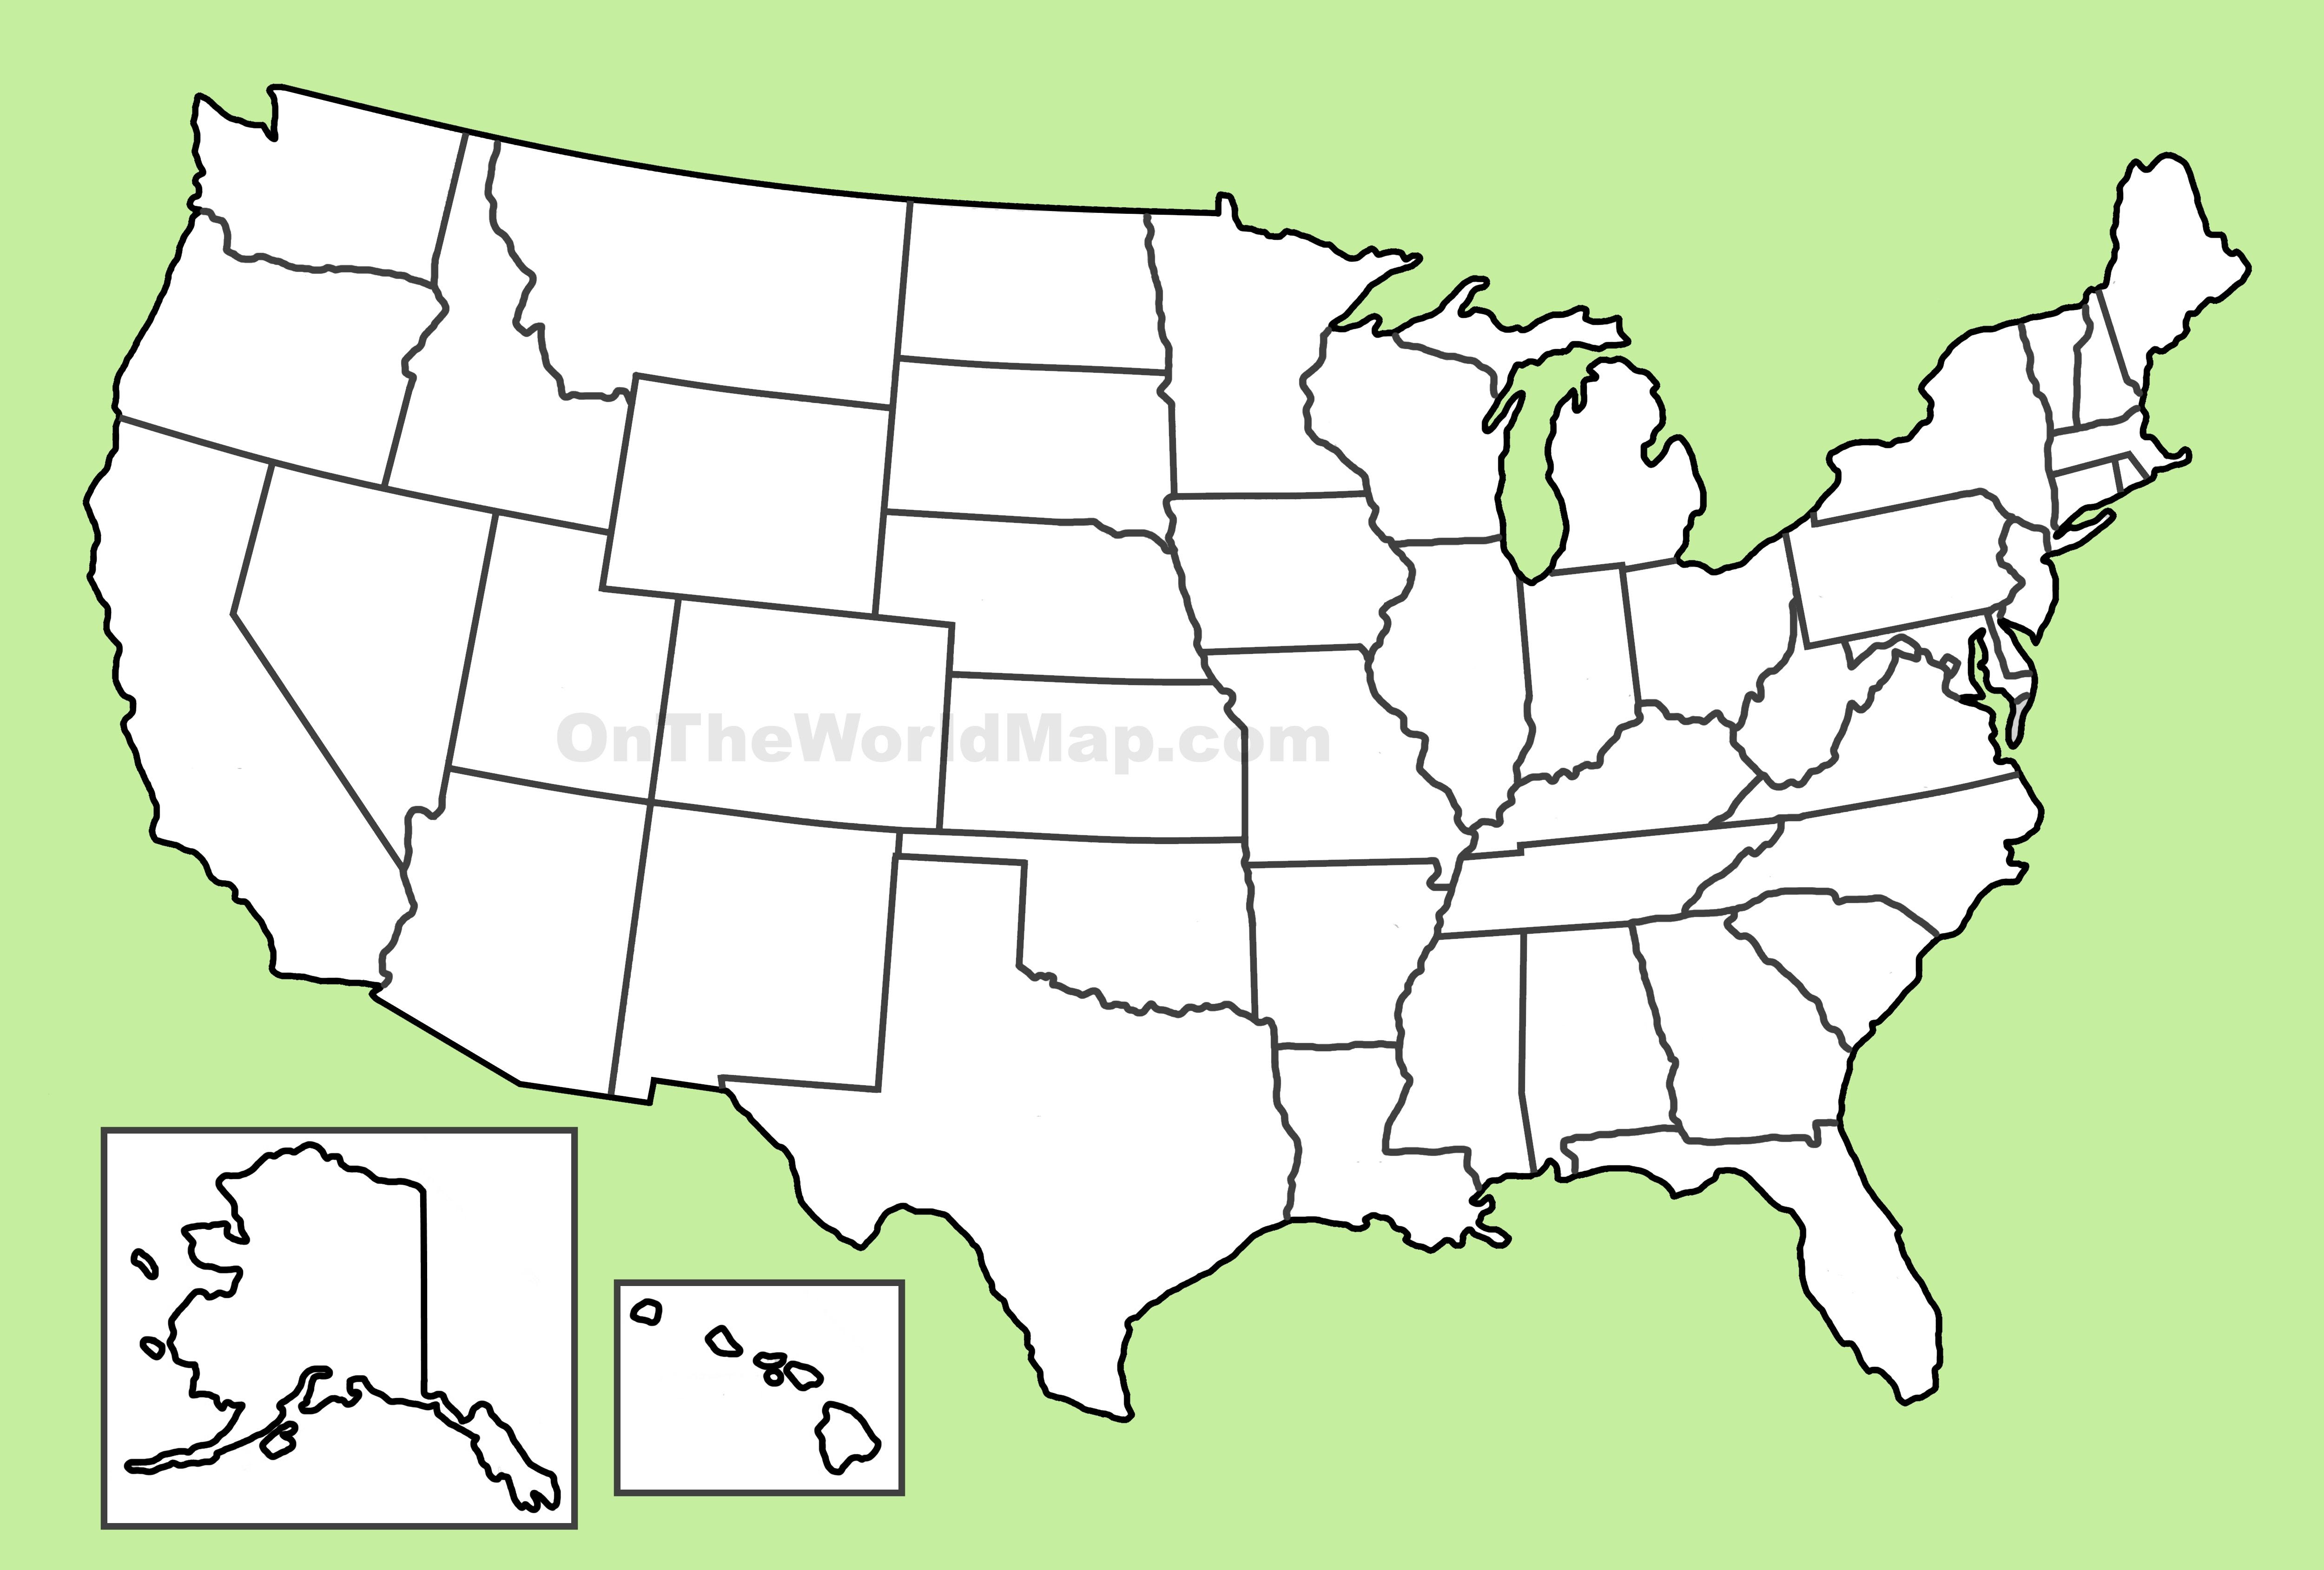 Y state. Карта Штатов США пустая. Карта США со Штатами белая. Карта США без Штатов. Карта Штатов США без названий.